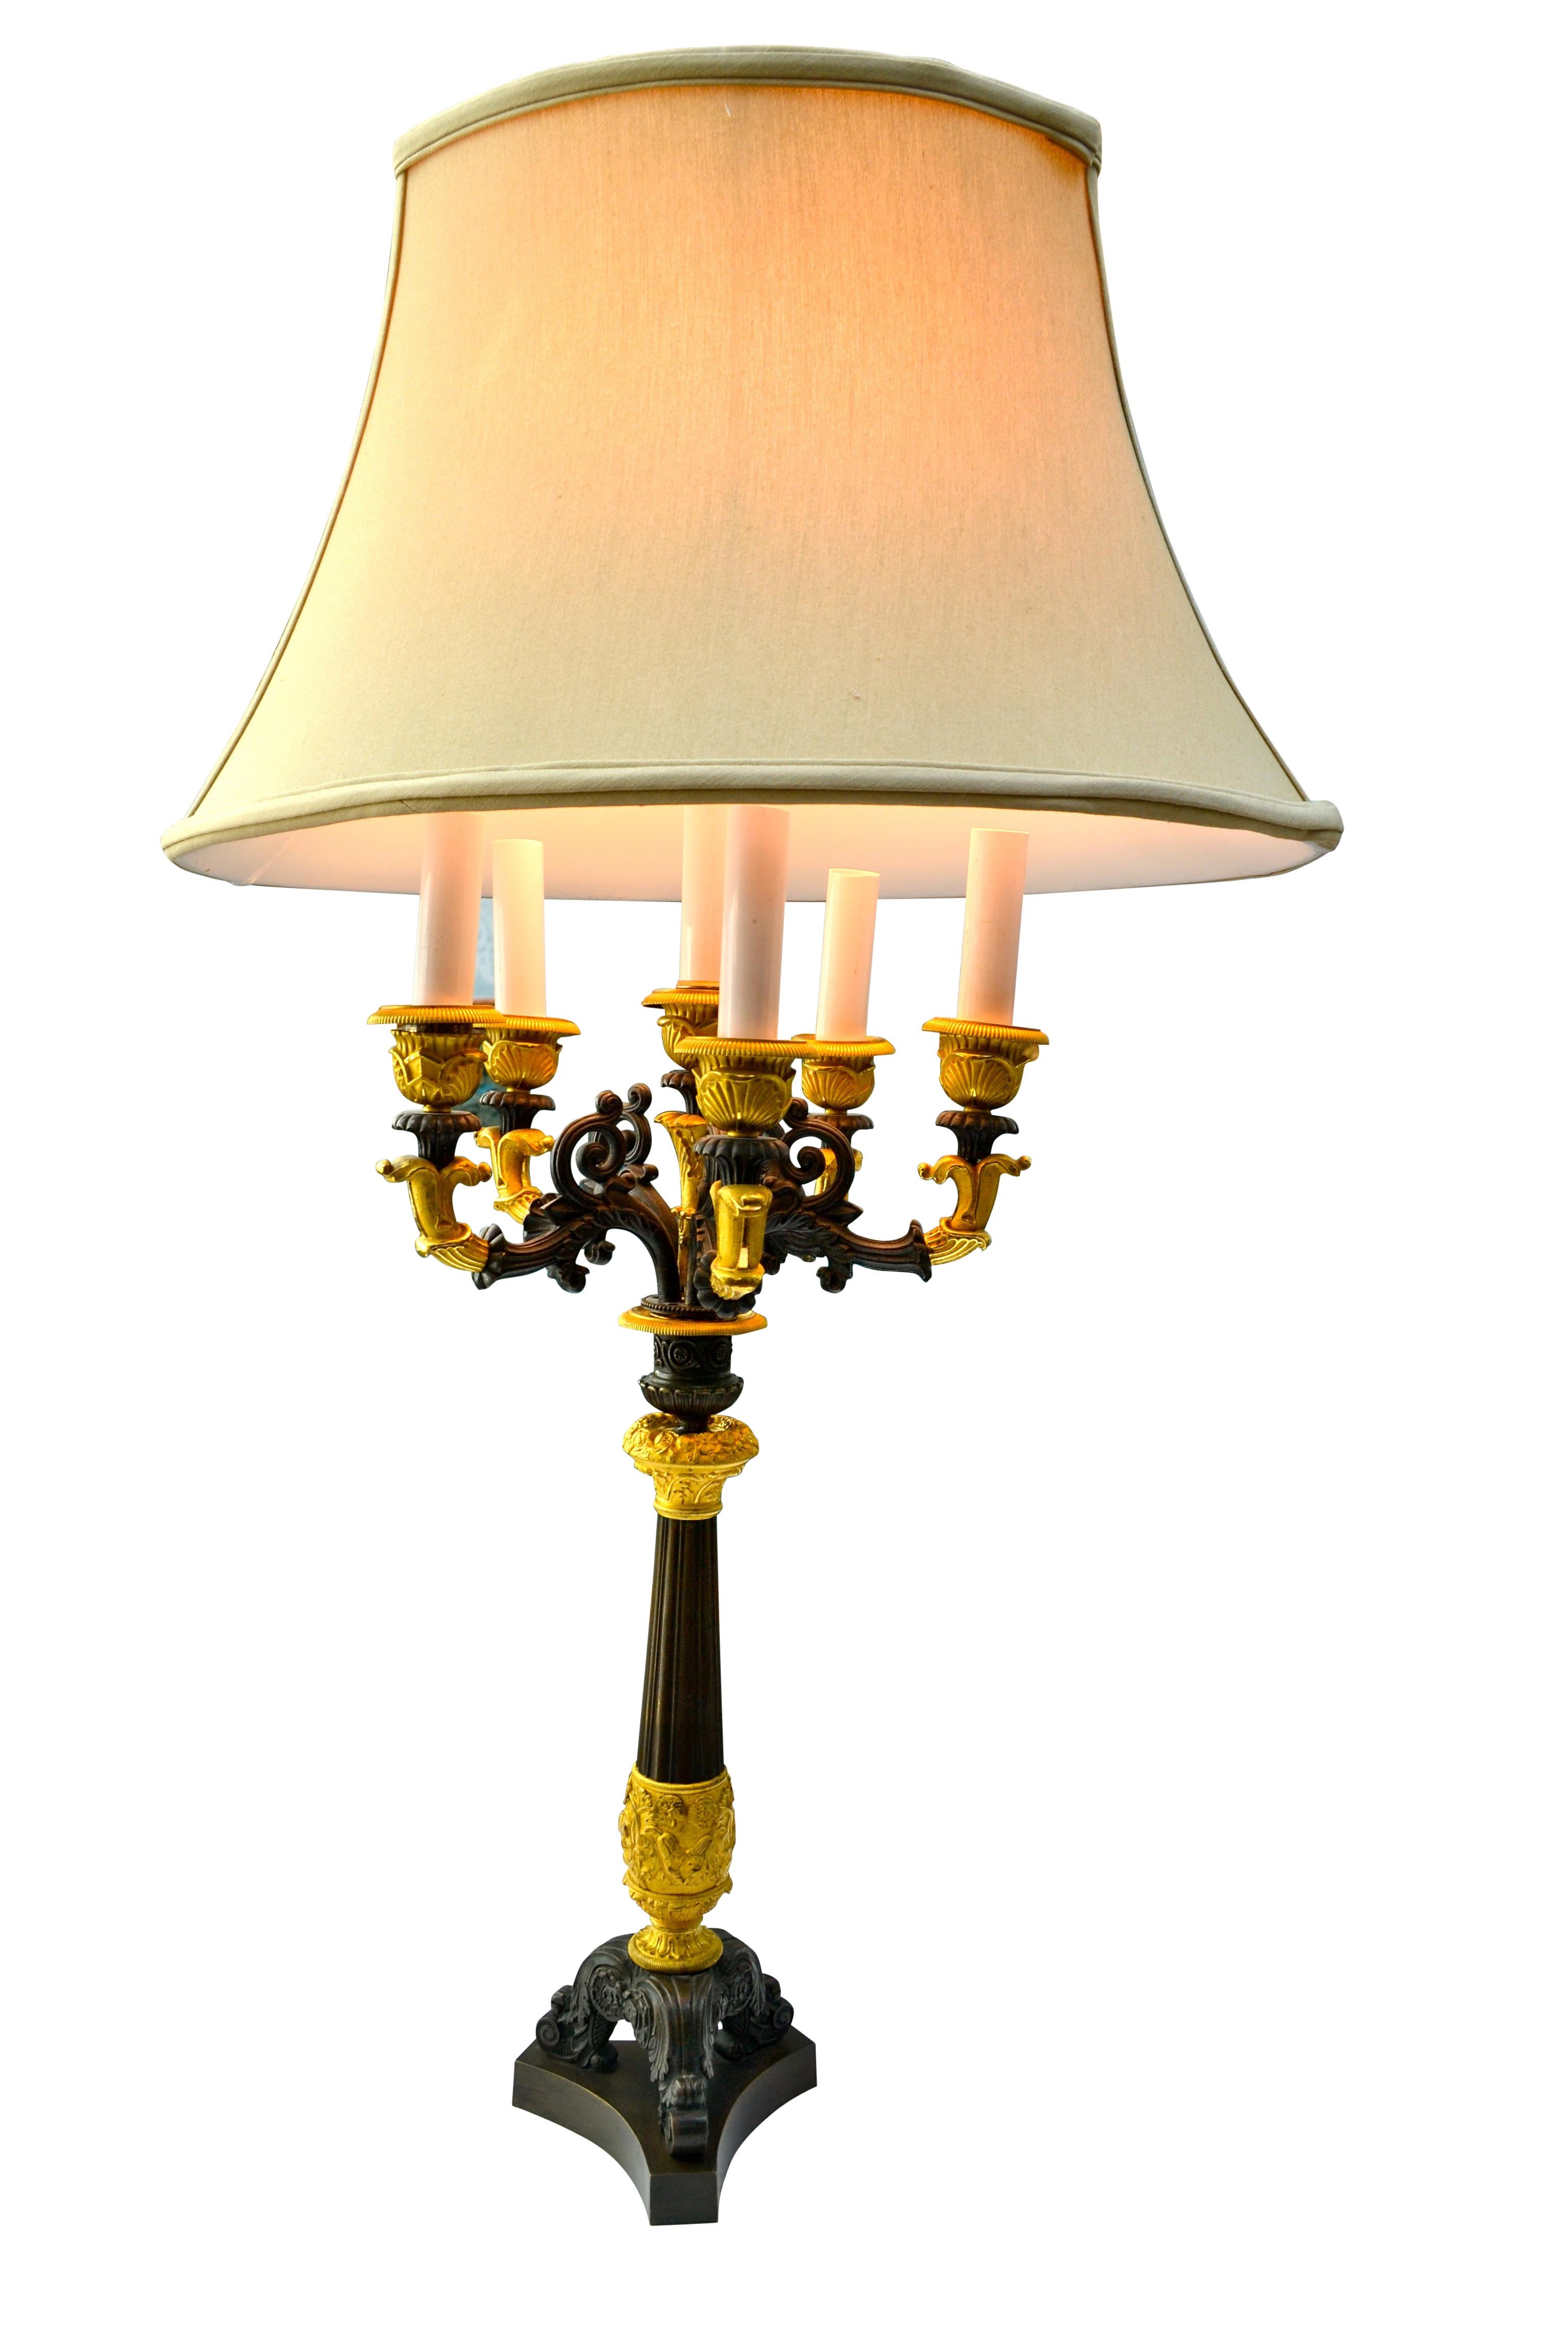 Un candélabre Empire français à six bougies en bronze patiné et doré qui a été converti en lampe.